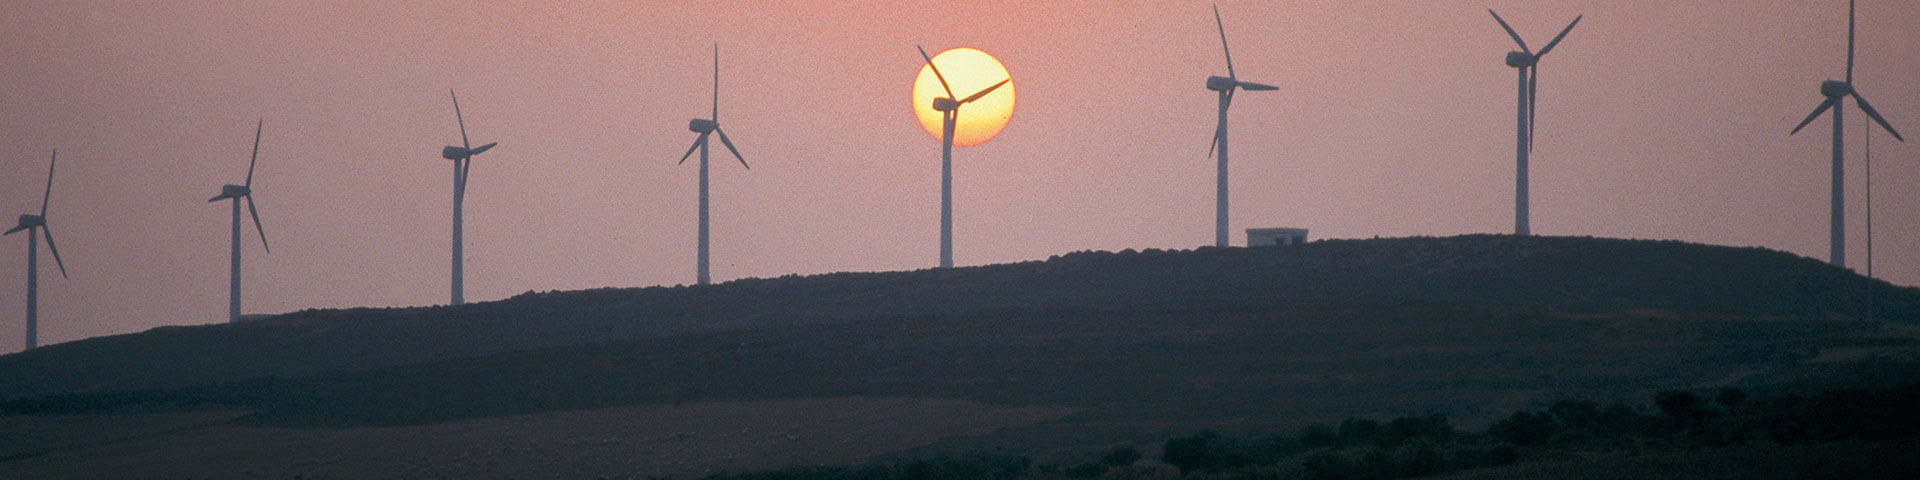 Eine Reihe von Windkraftanlagen steht bei der Abenddämmerung auf einem Hügel.